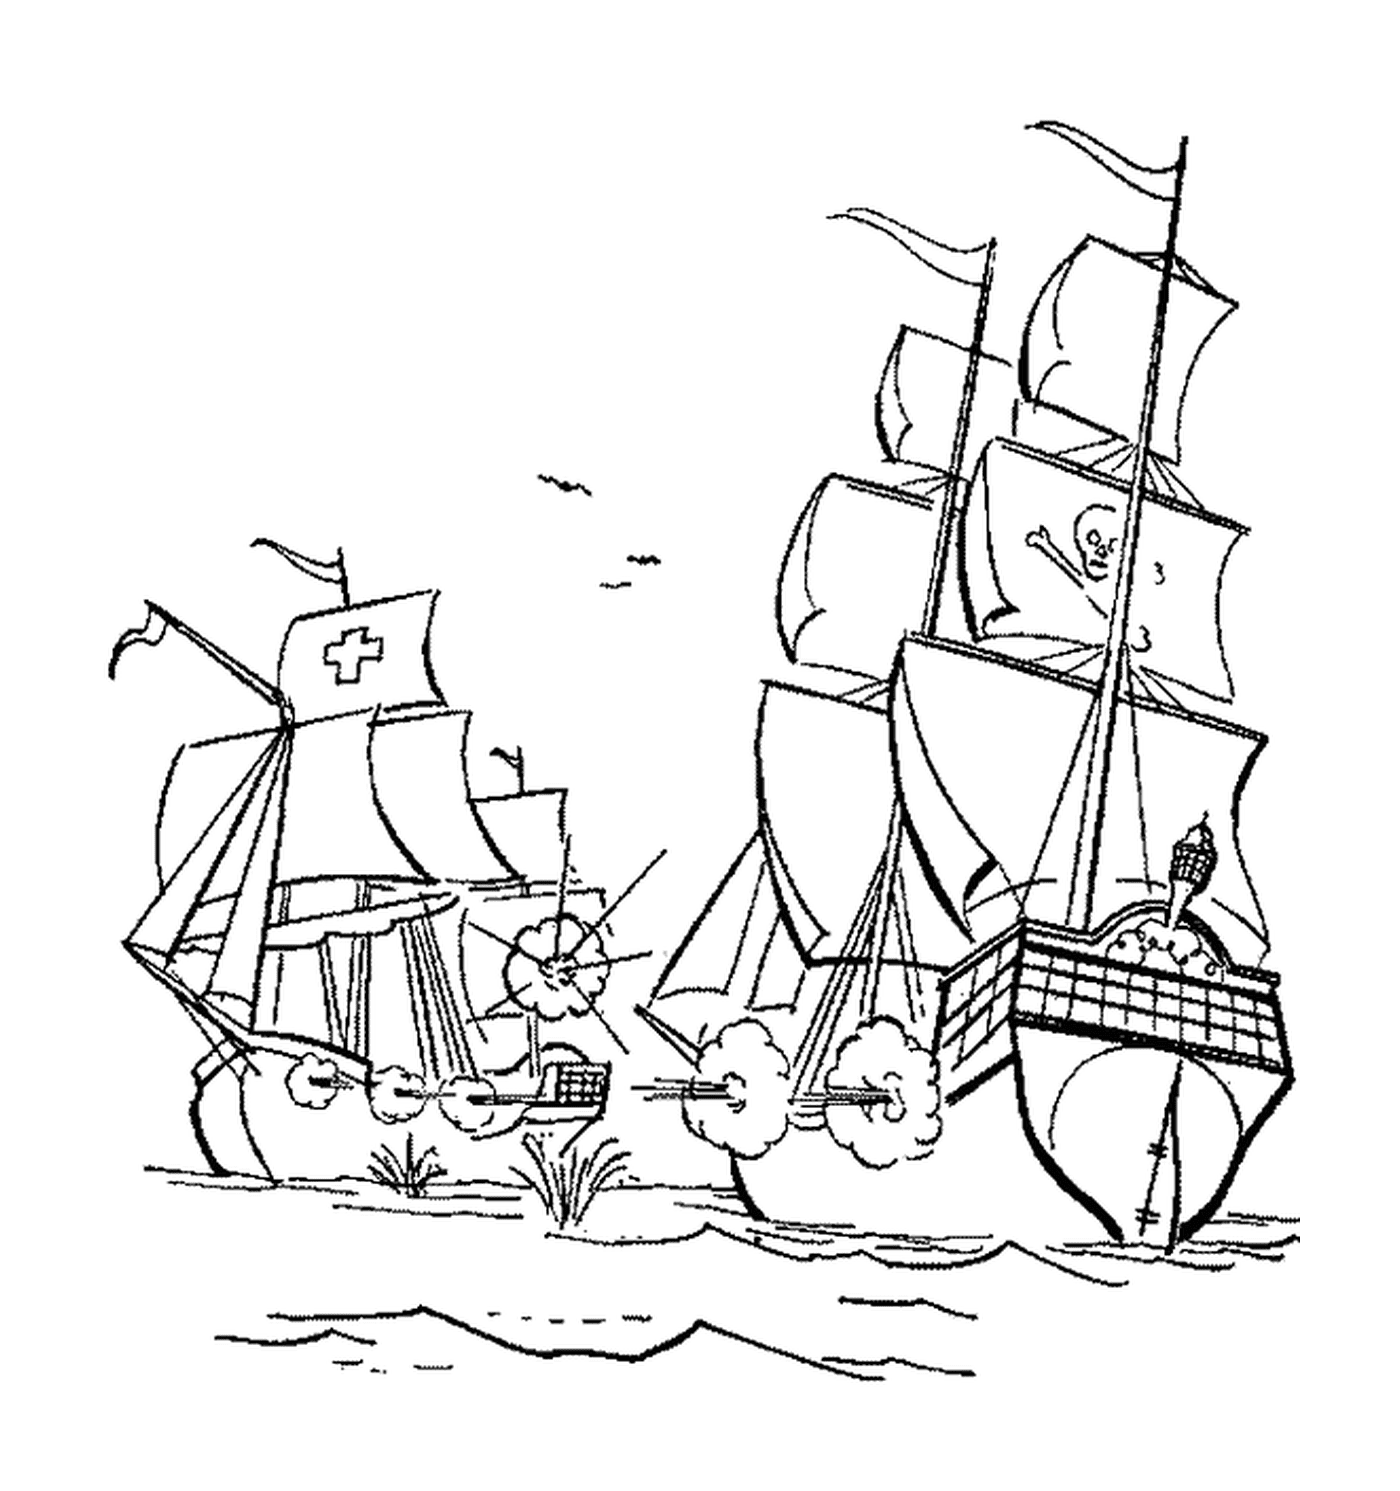  The pirate ship attacks a cargo ship 